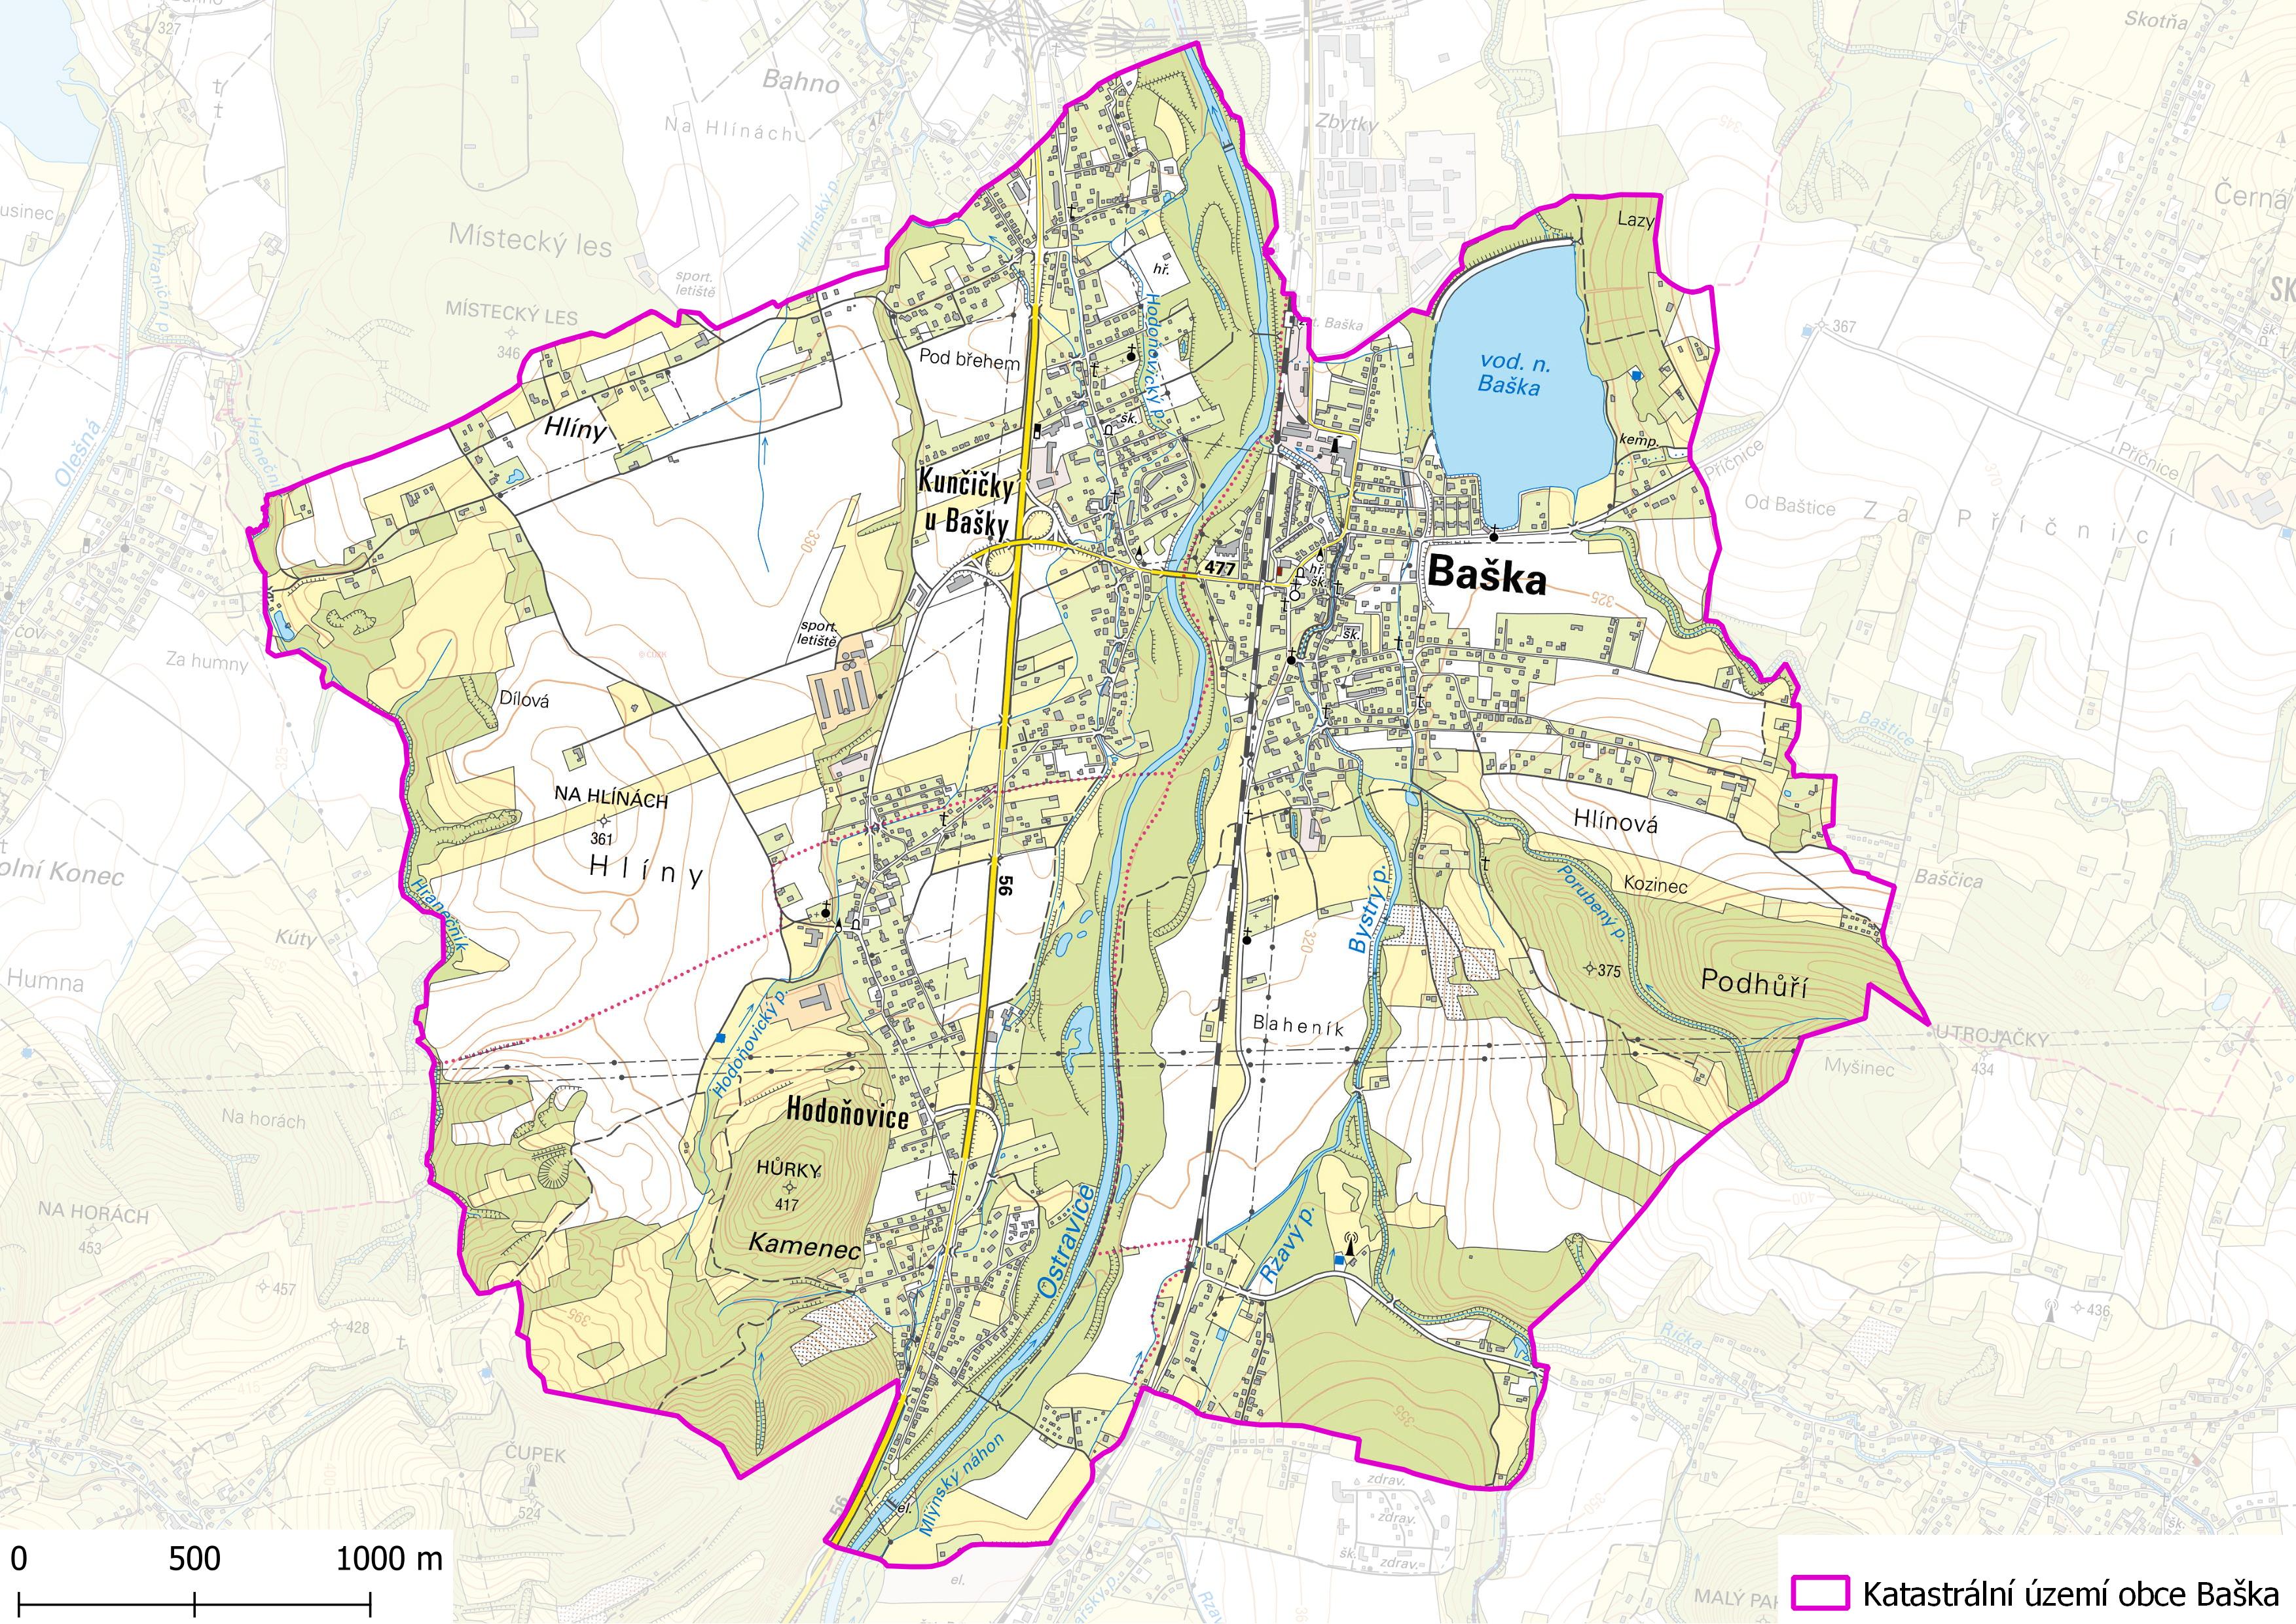 Katastrální území obce Baška